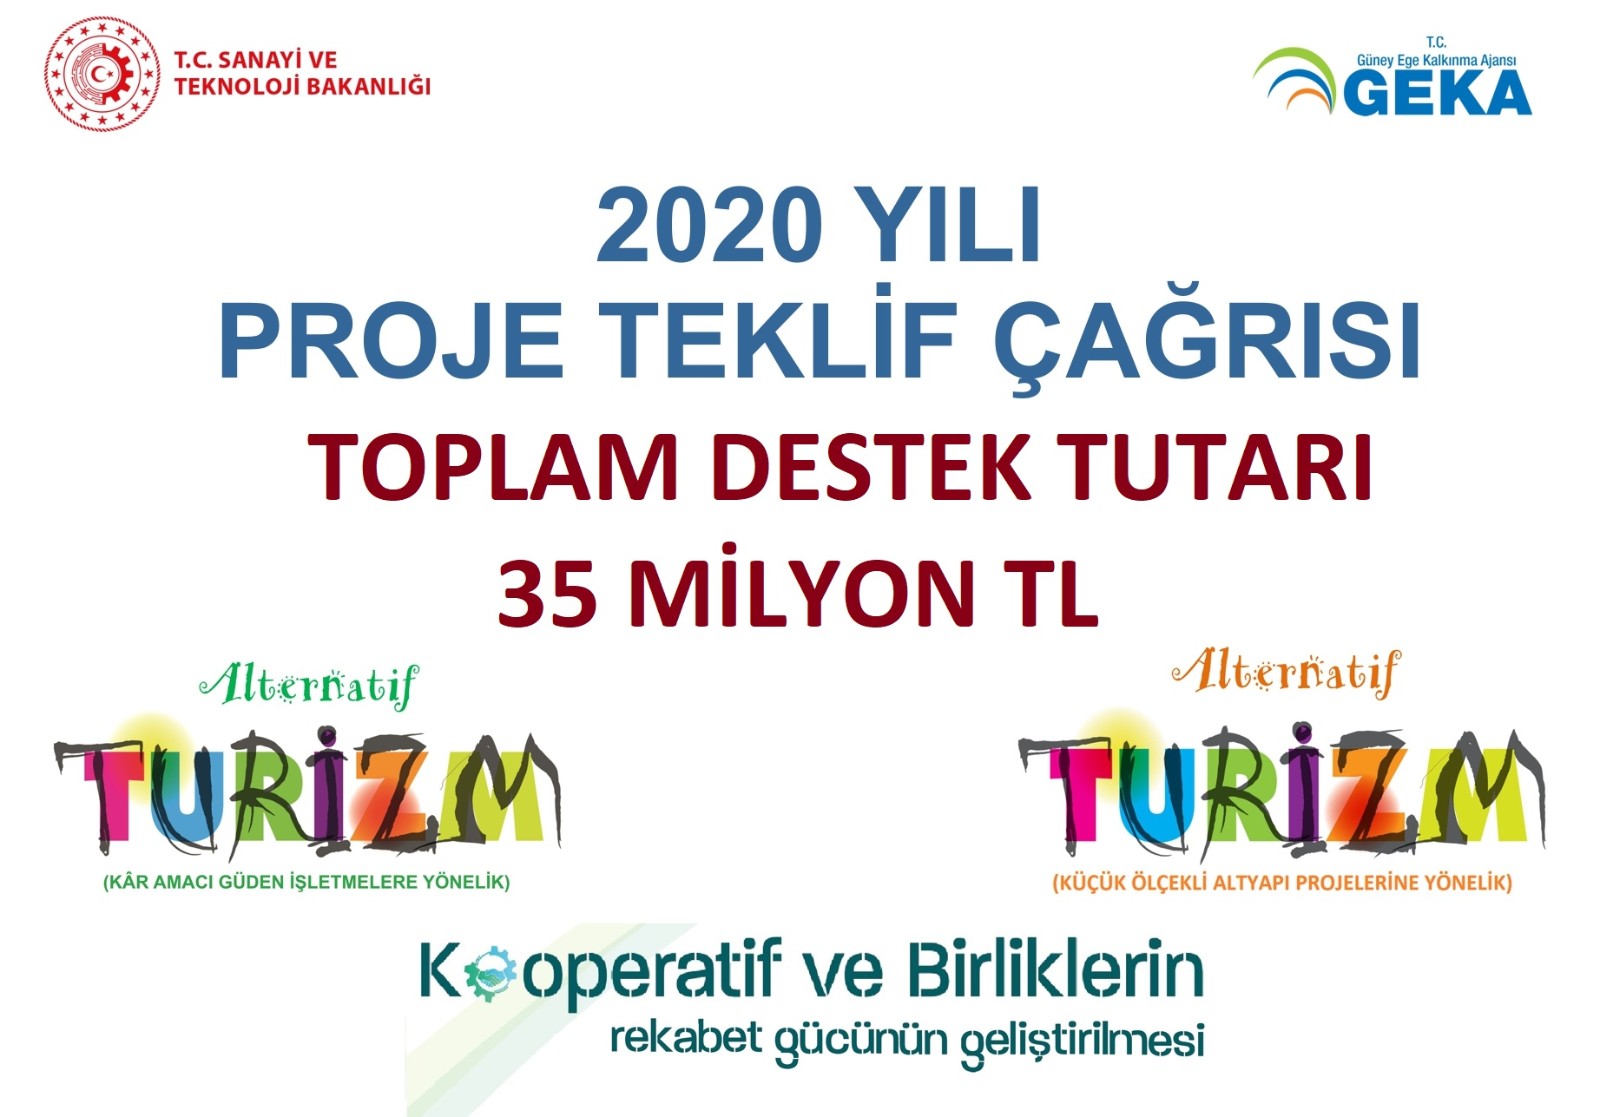 2020 Yılı Proje Teklif Çağrısı toplam 35 Milyon TL bütçe ile ilan edilmiştir